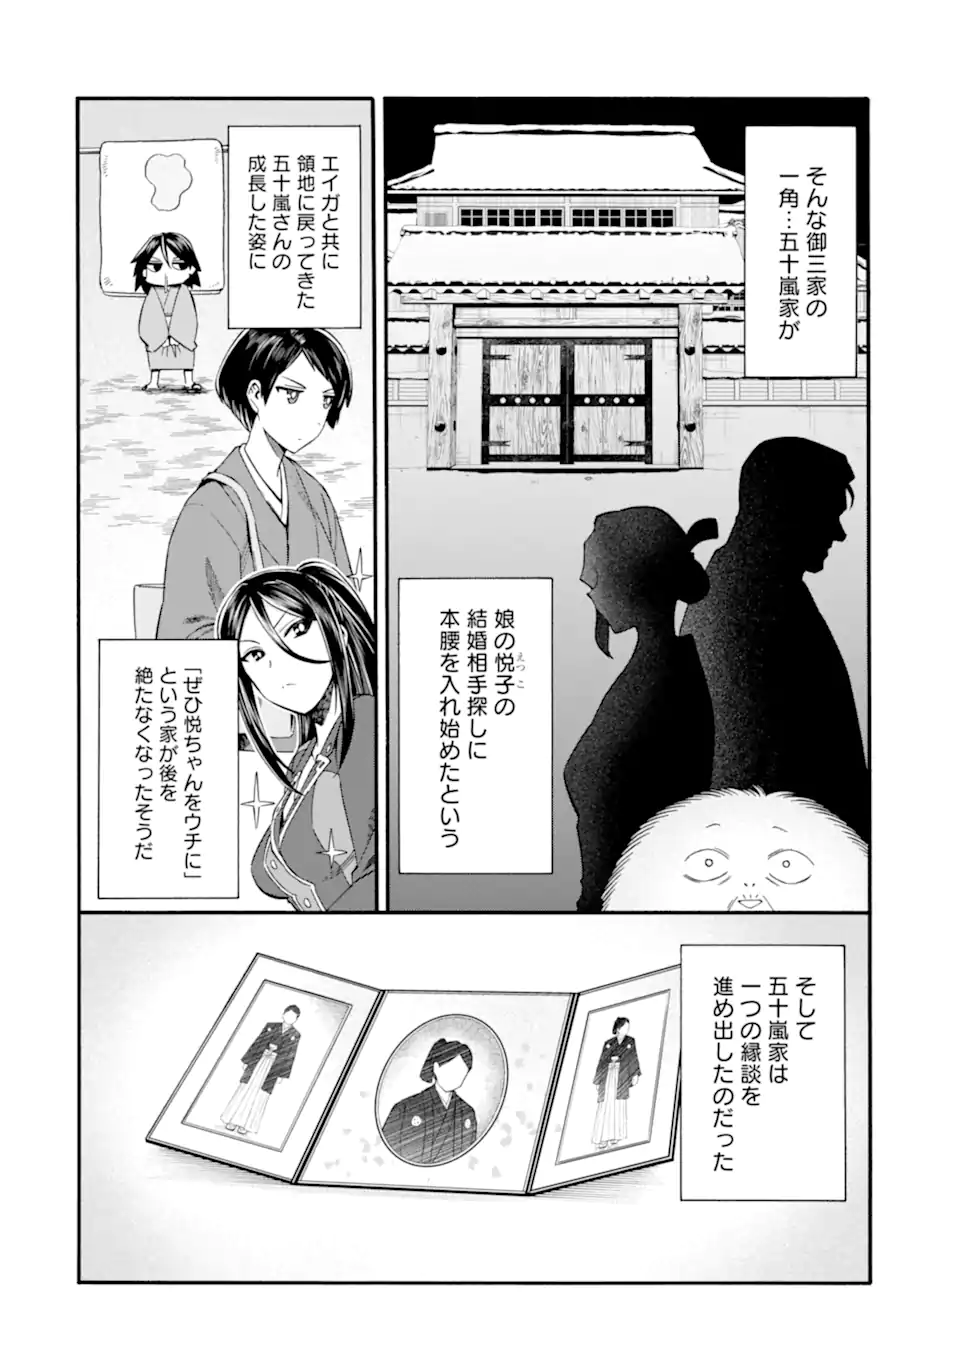 Ikusei Skill wa Mou Iranai to Yuusha Party o Kaiko Sareta no de, Taishoku Kingawari ni Moratta “Ryouchi” o Tsuyoku Shitemiru - Chapter 40.1 - Page 2